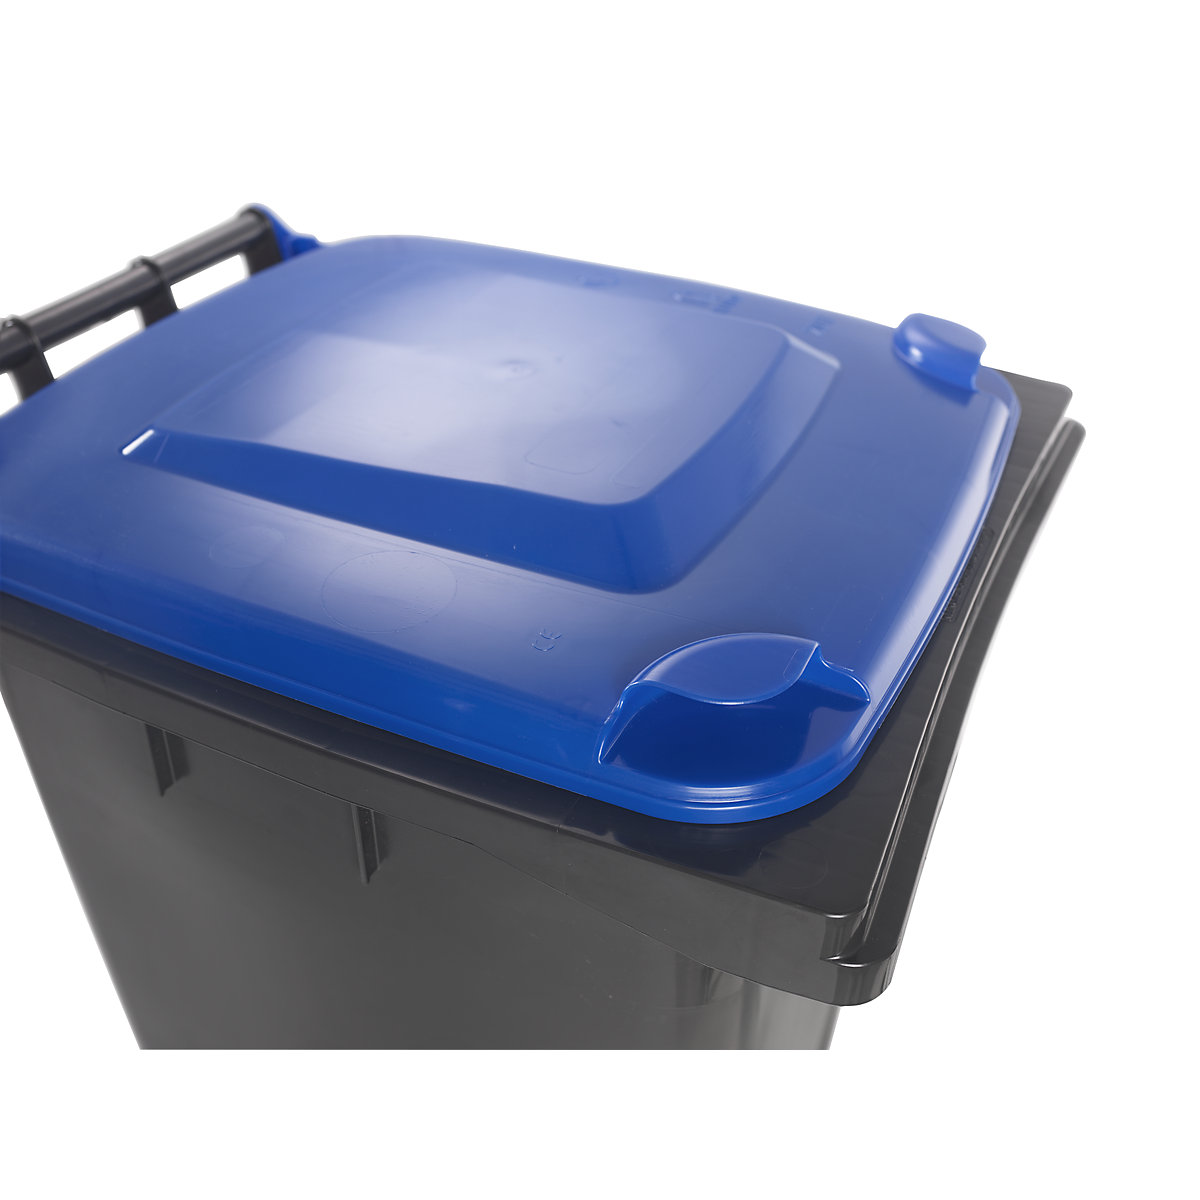 Contentor de lixo conforme a norma DIN EN 840 (Imagem do produto 10)